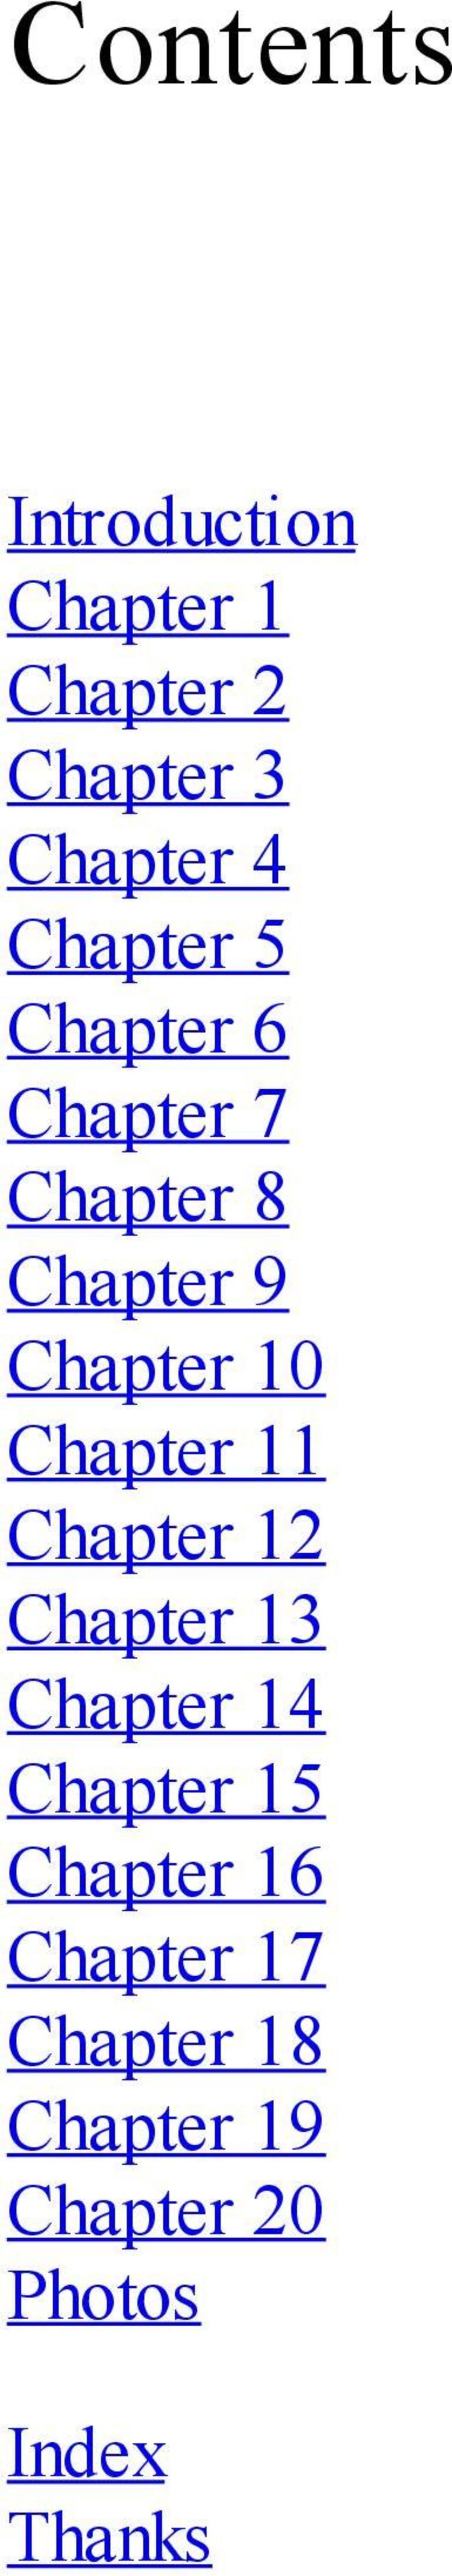 Chapter 11 Chapter 12 Chapter 13 Chapter 14 Chapter 15 Chapter